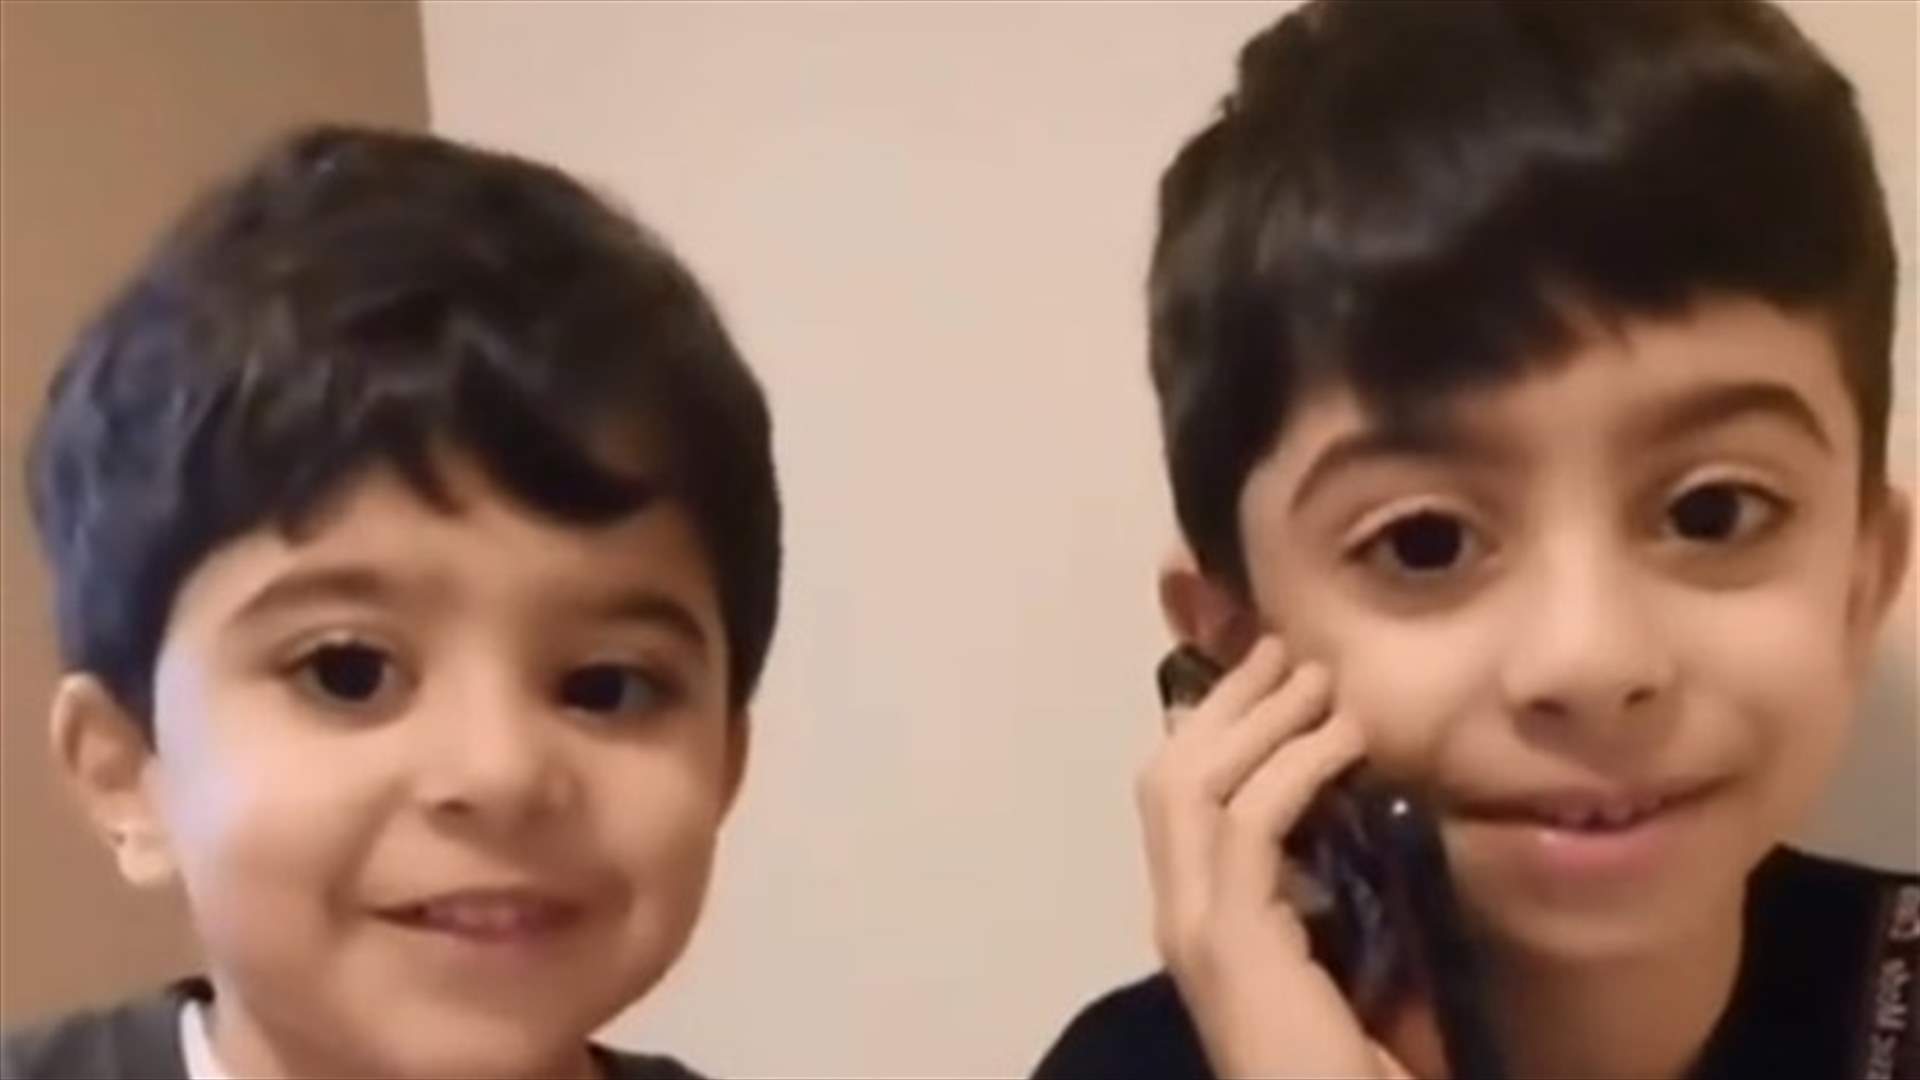 إبنا هشام حداد يحذران من كورونا بعد إصابة والديهما بالفيروس (فيديو)